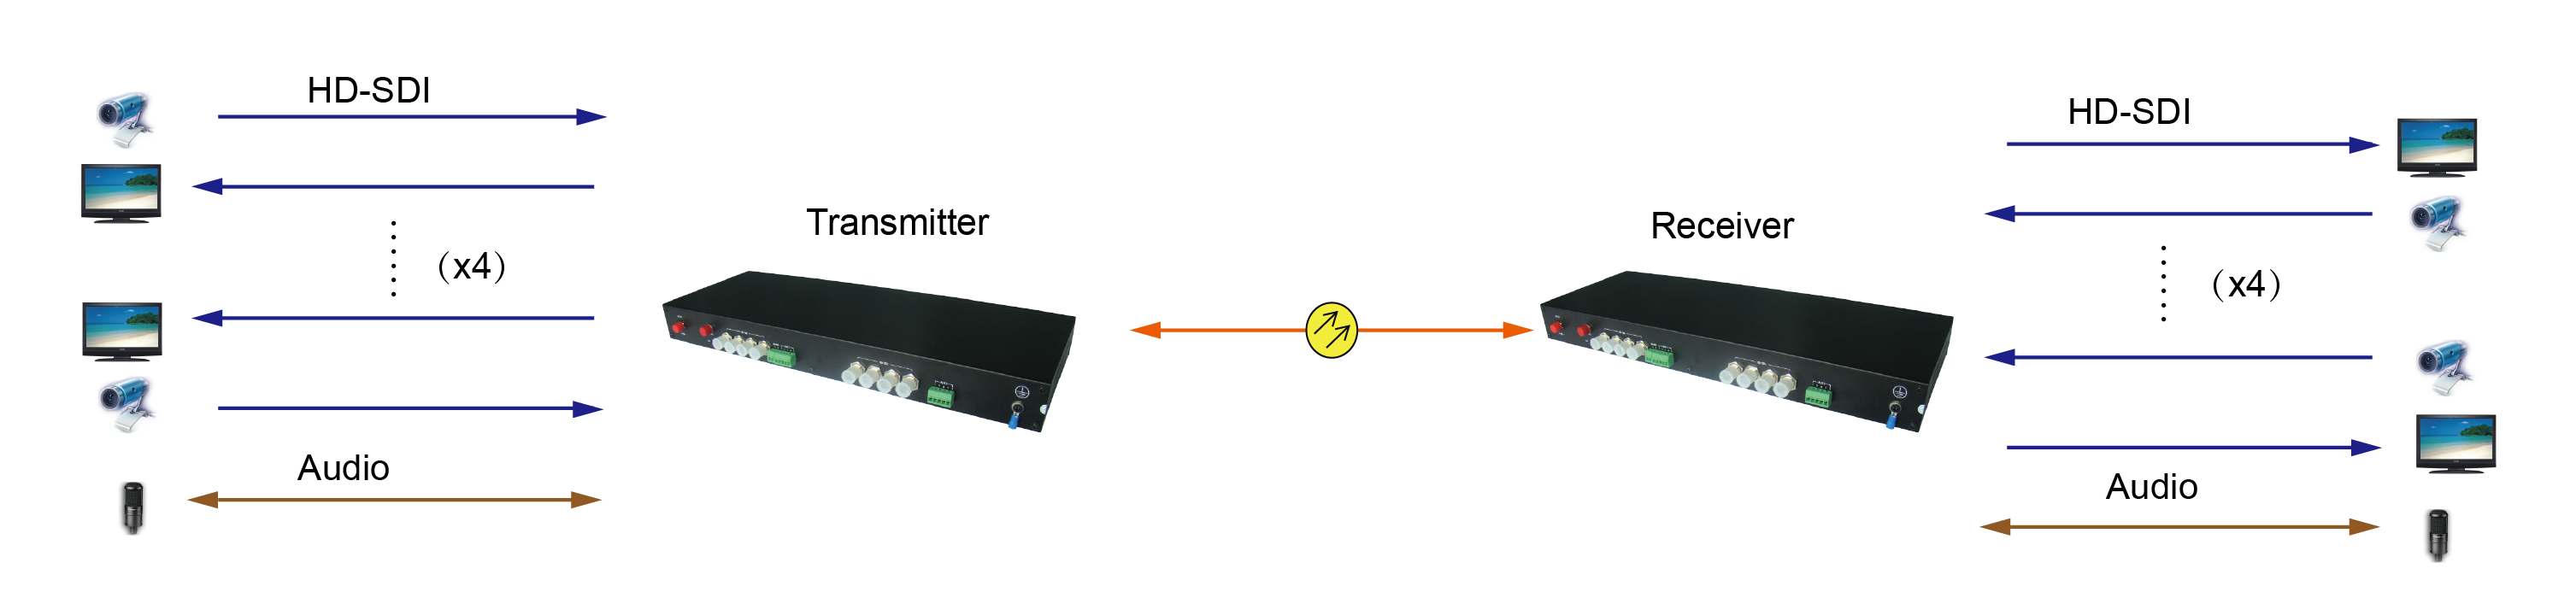 4路HD-SDI光端机应用图